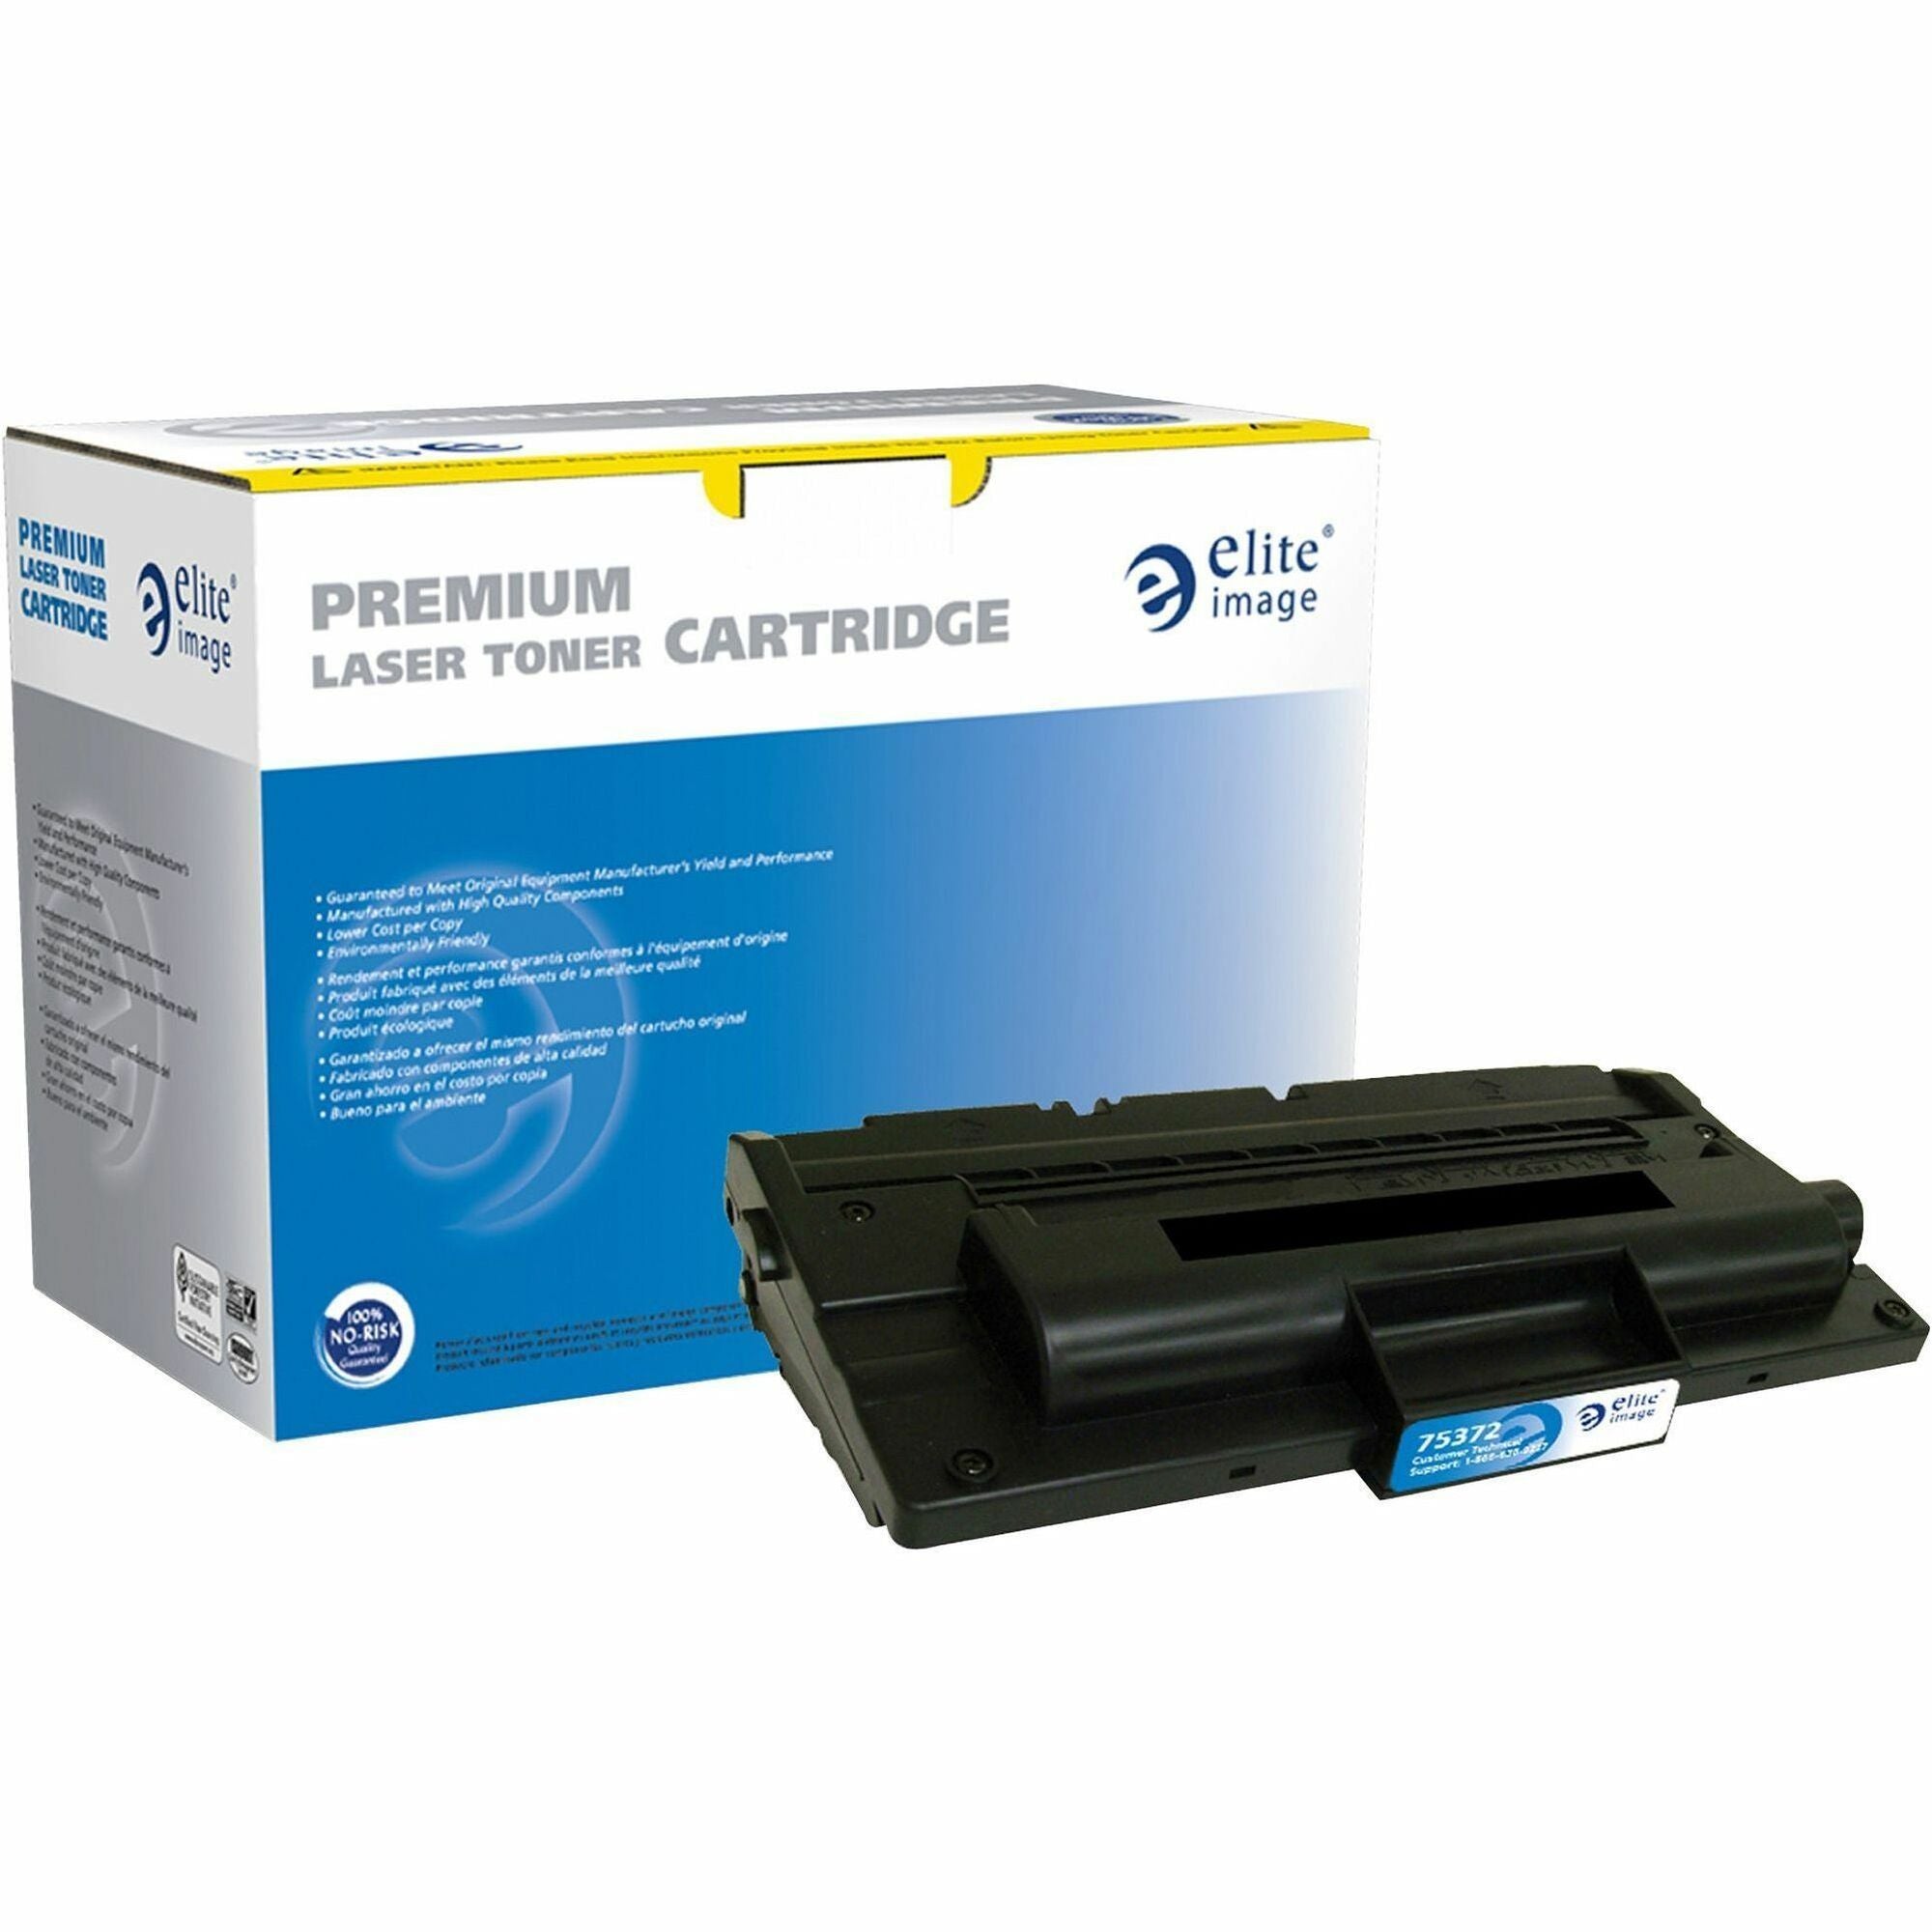 Elite Image Remanufactured Toner Cartridge - Alternative for Dell (310-7945) - Laser - 5000 Pages - Black - 1 Each - 